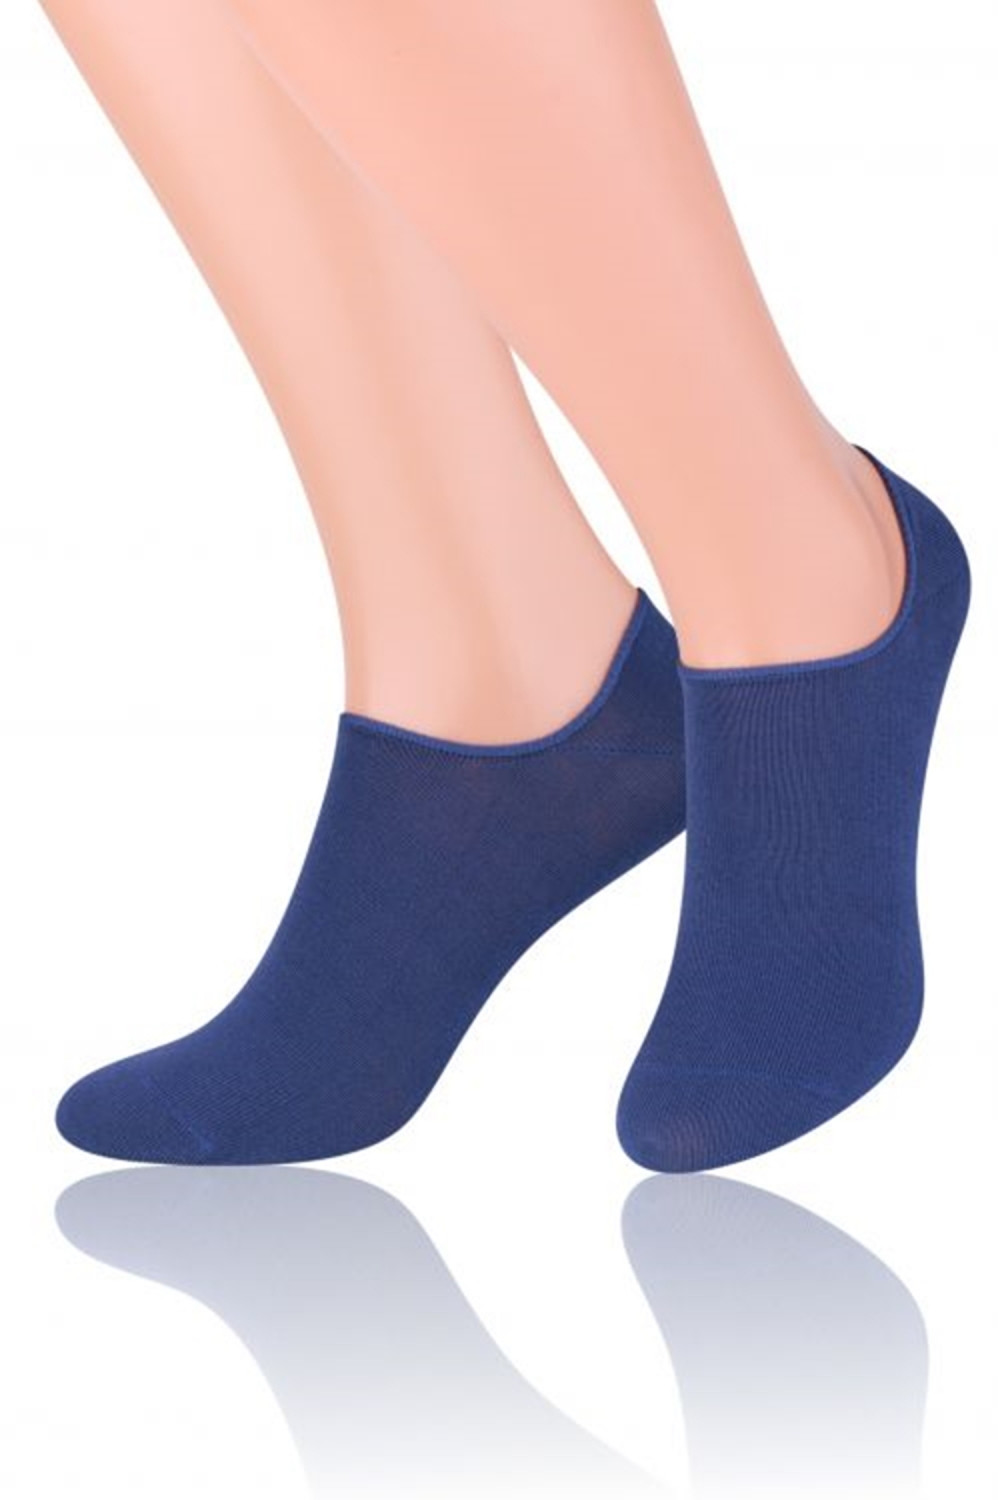 Dámské ponožky Invisible 070 dark blue - Steven tmavě modrá 44/46